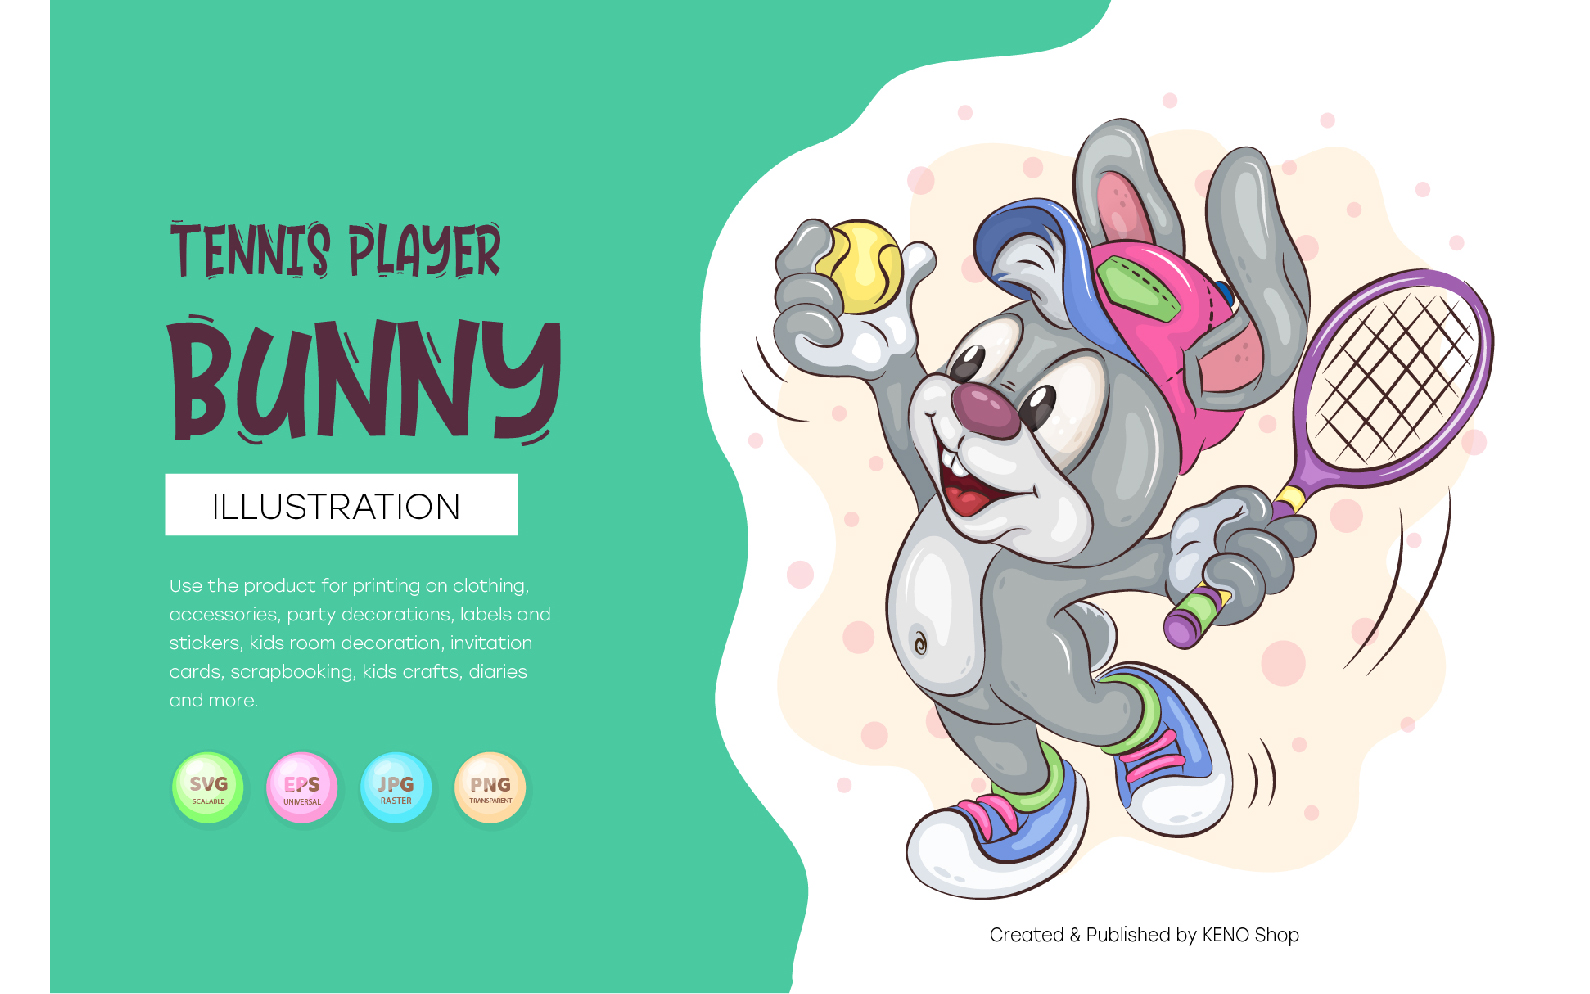 Cartoon Bunny Tennis Player. T-Shirt, PNG, SVG.